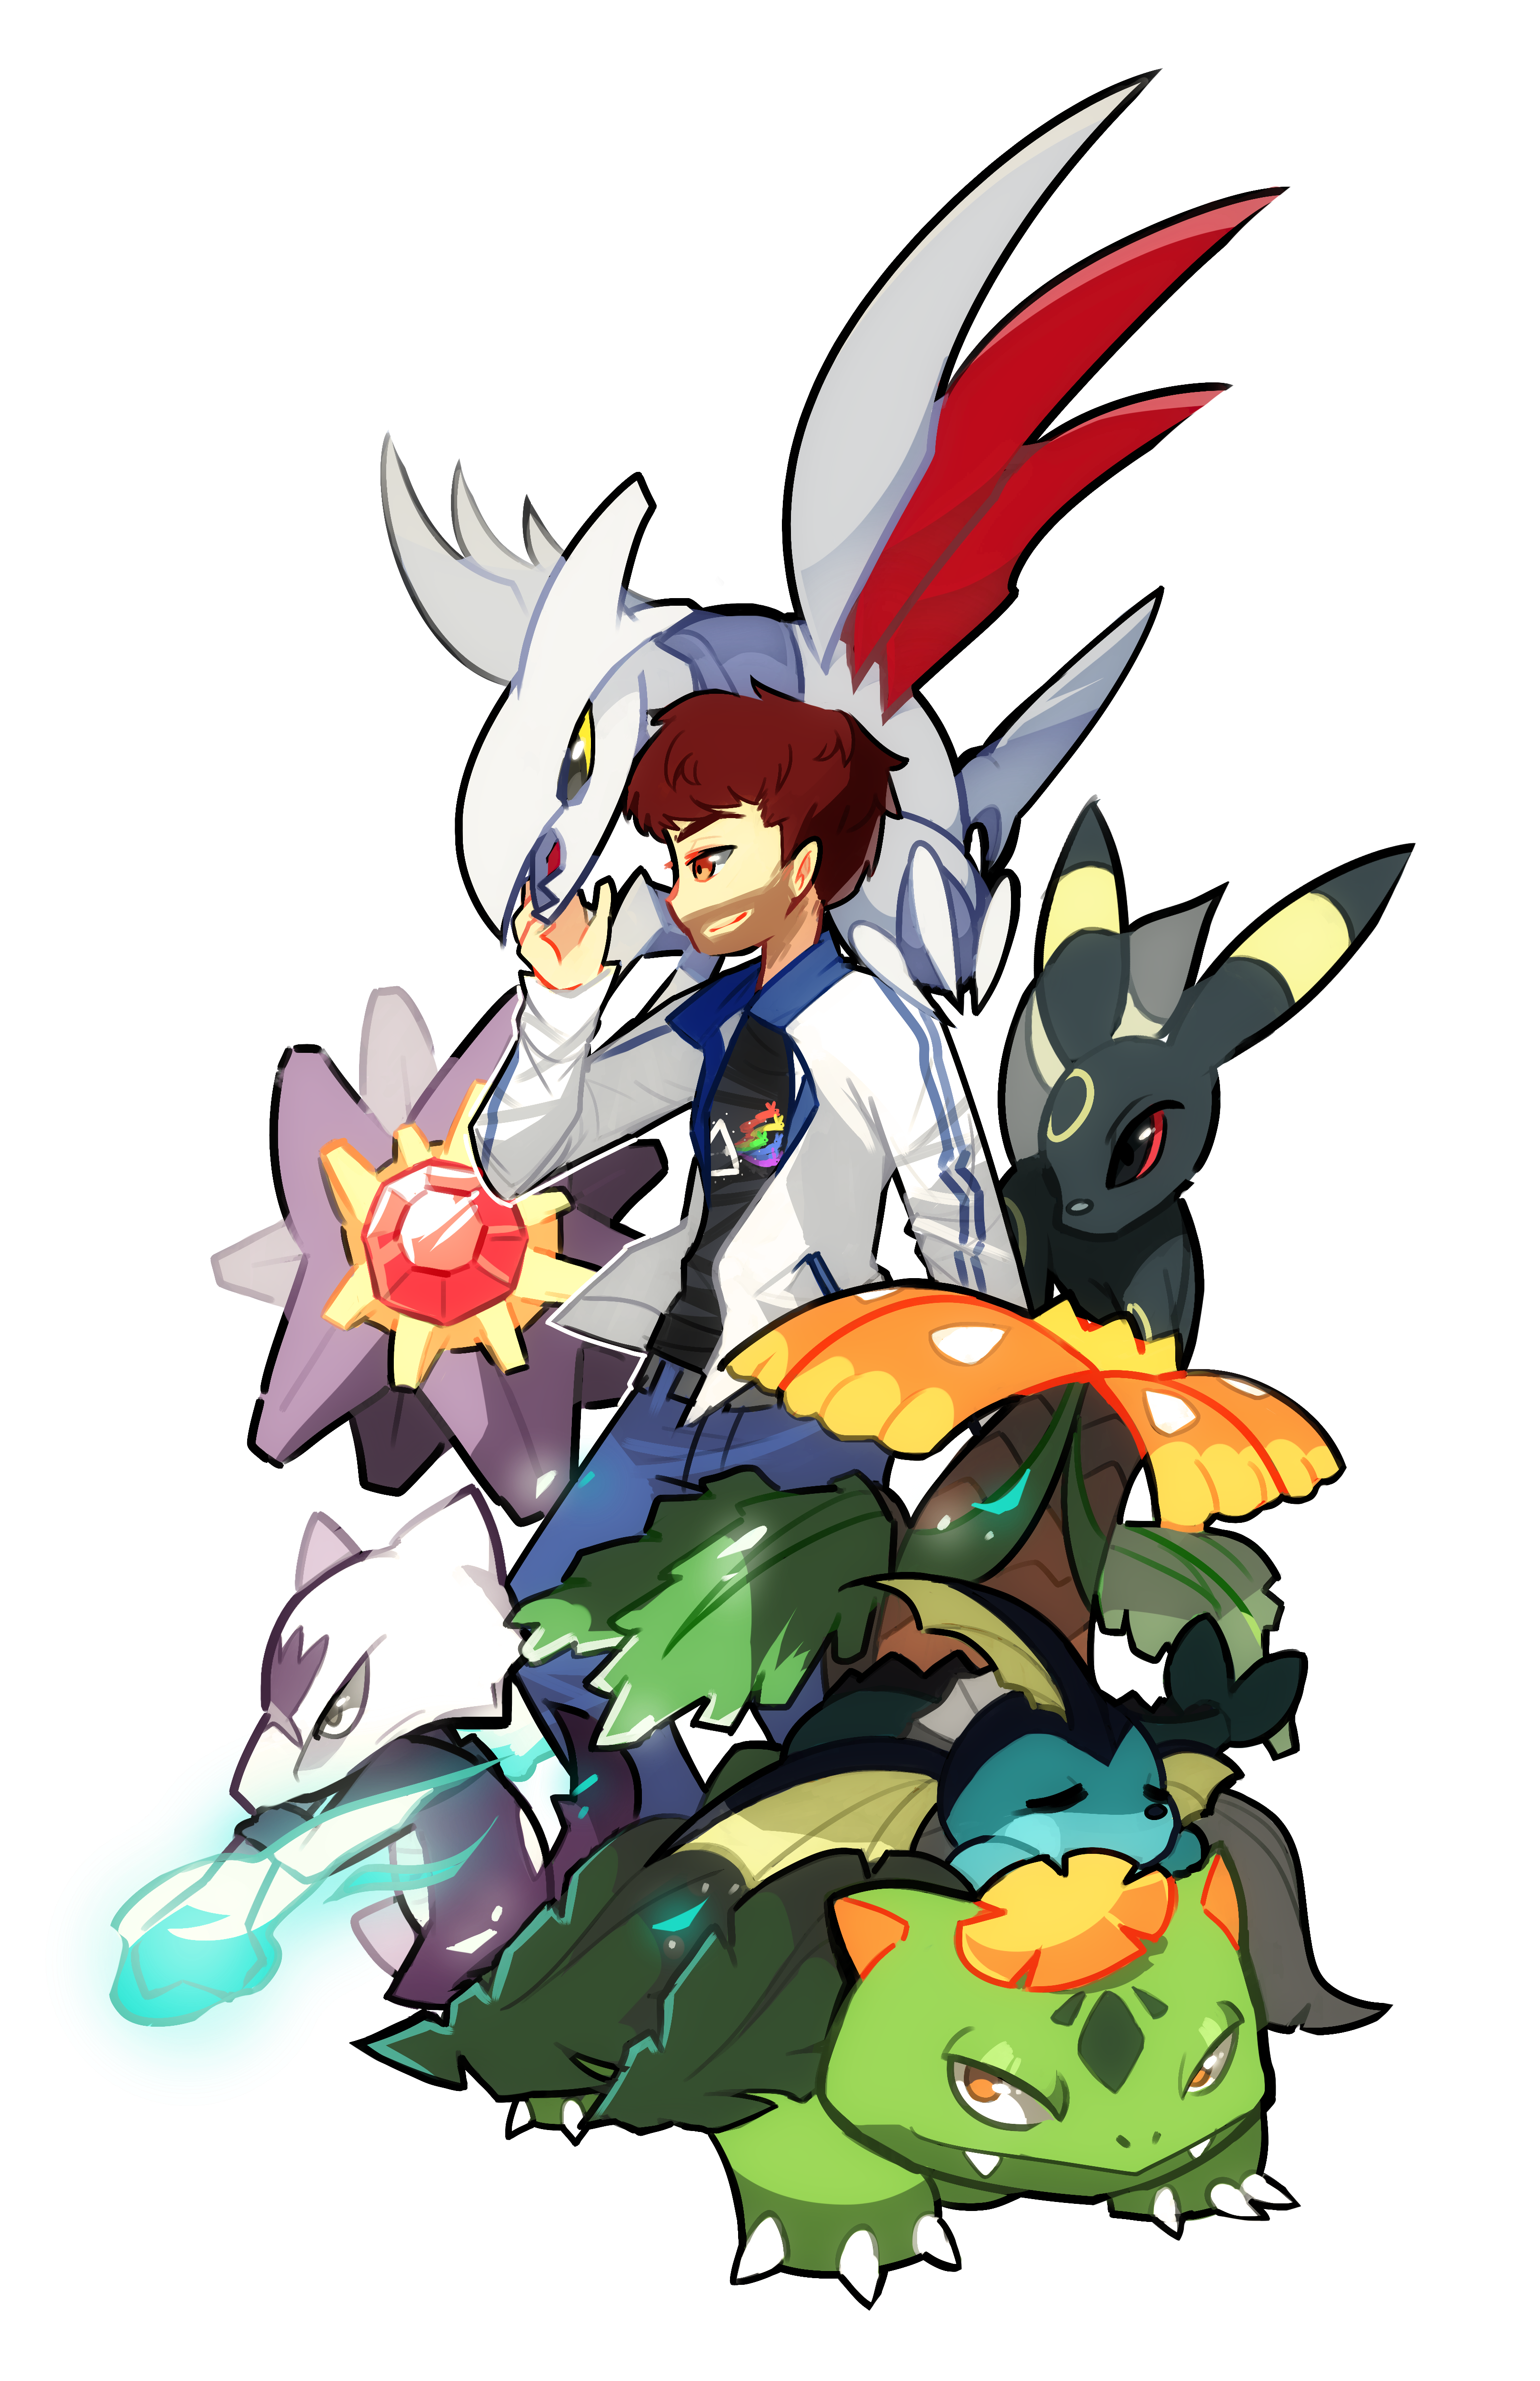 A pokemon trainer surrounded by his pokemon: Skarmory, Umbreon, Starmie, Alolan Marowak, Vaporeon, and Mega Venusaur.